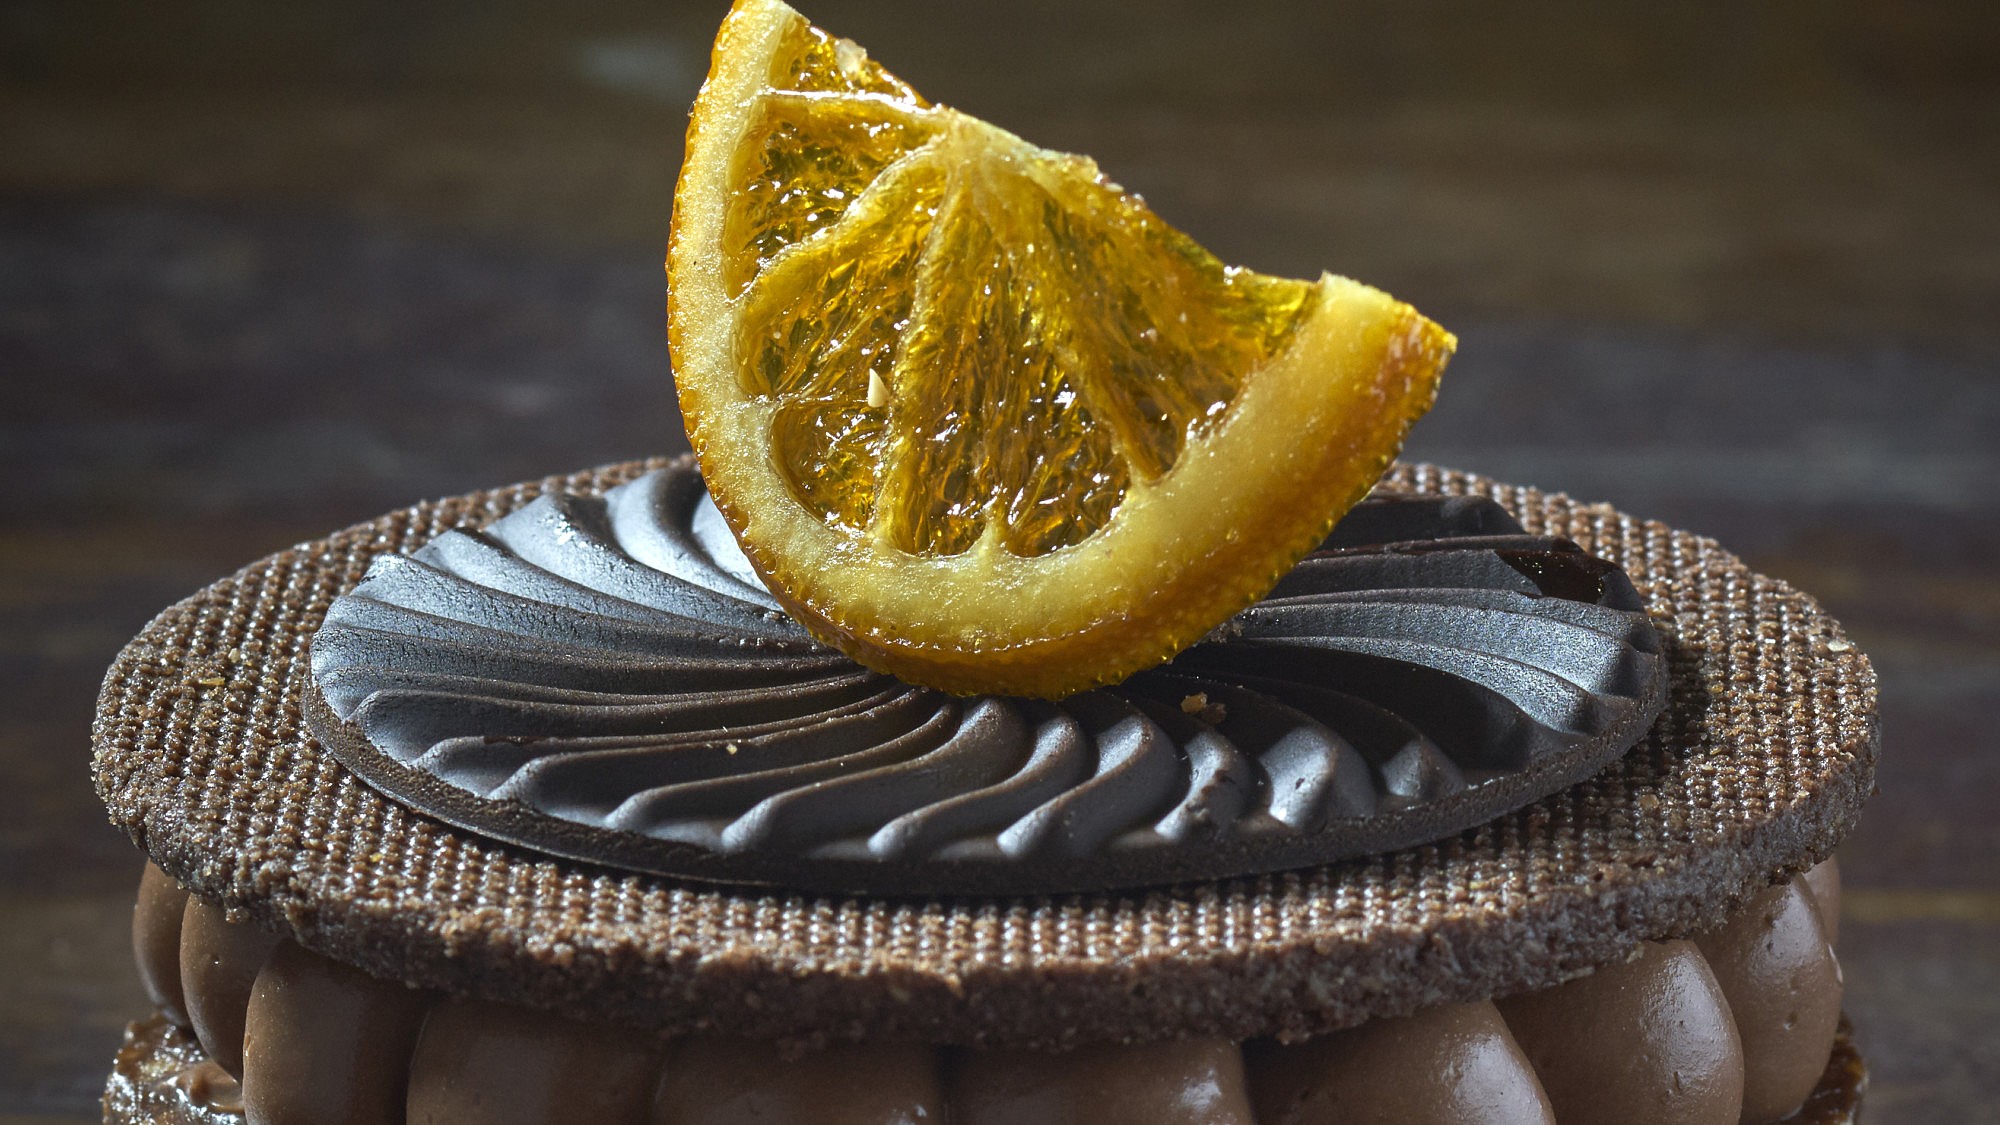 עוגת קקאו וקרמו שוקולד- תפוז של רביבה אפל ז"ל. צילום: אנטולי מיכאלו